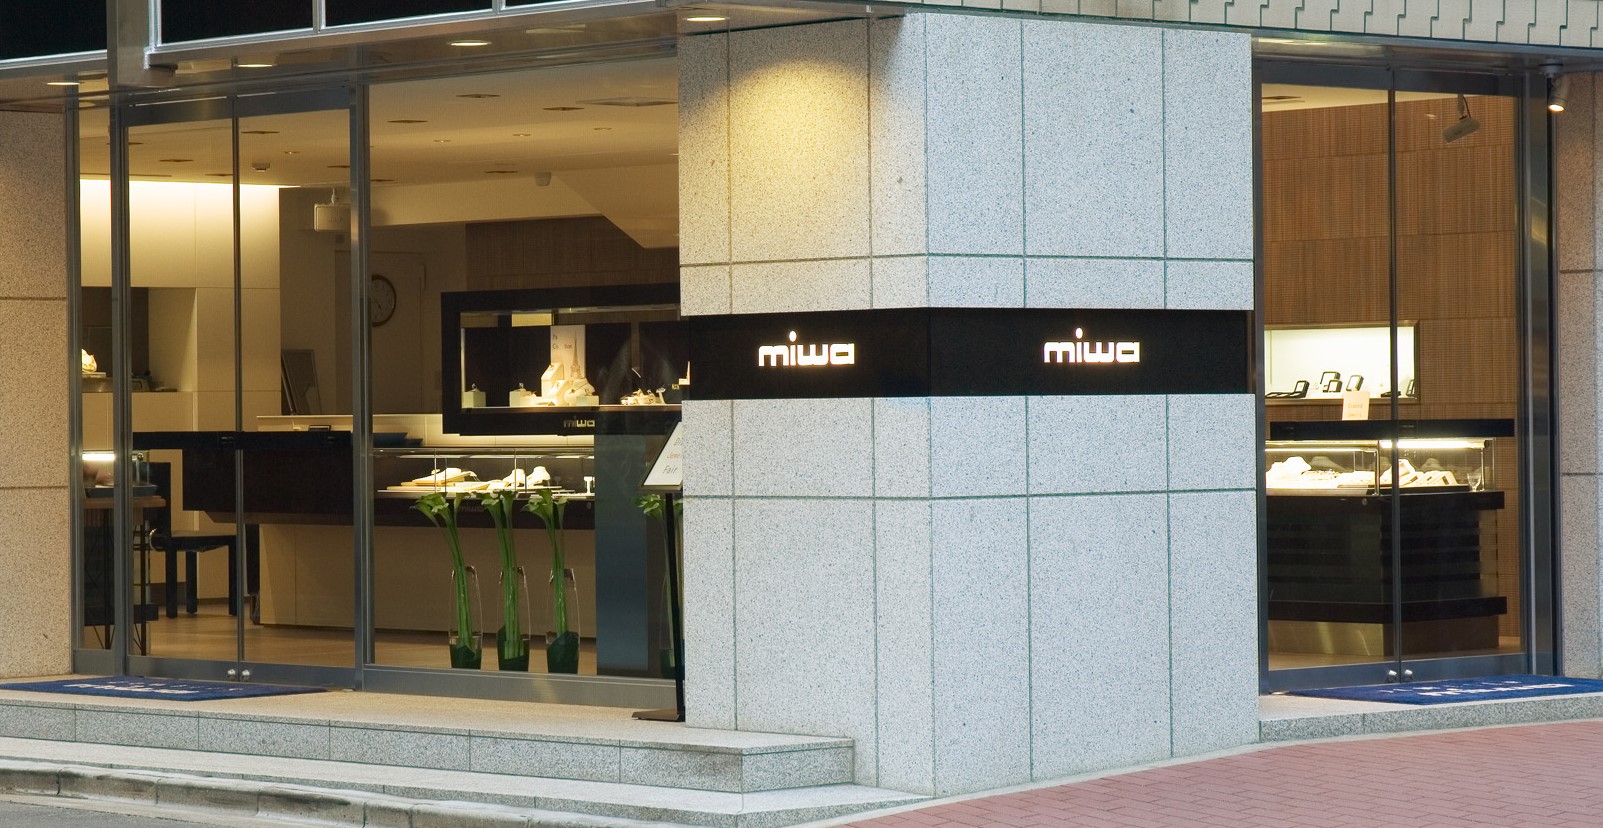 宝石専門店 ミワ | GINZA OFFICIAL – 銀座公式ウェブサイト